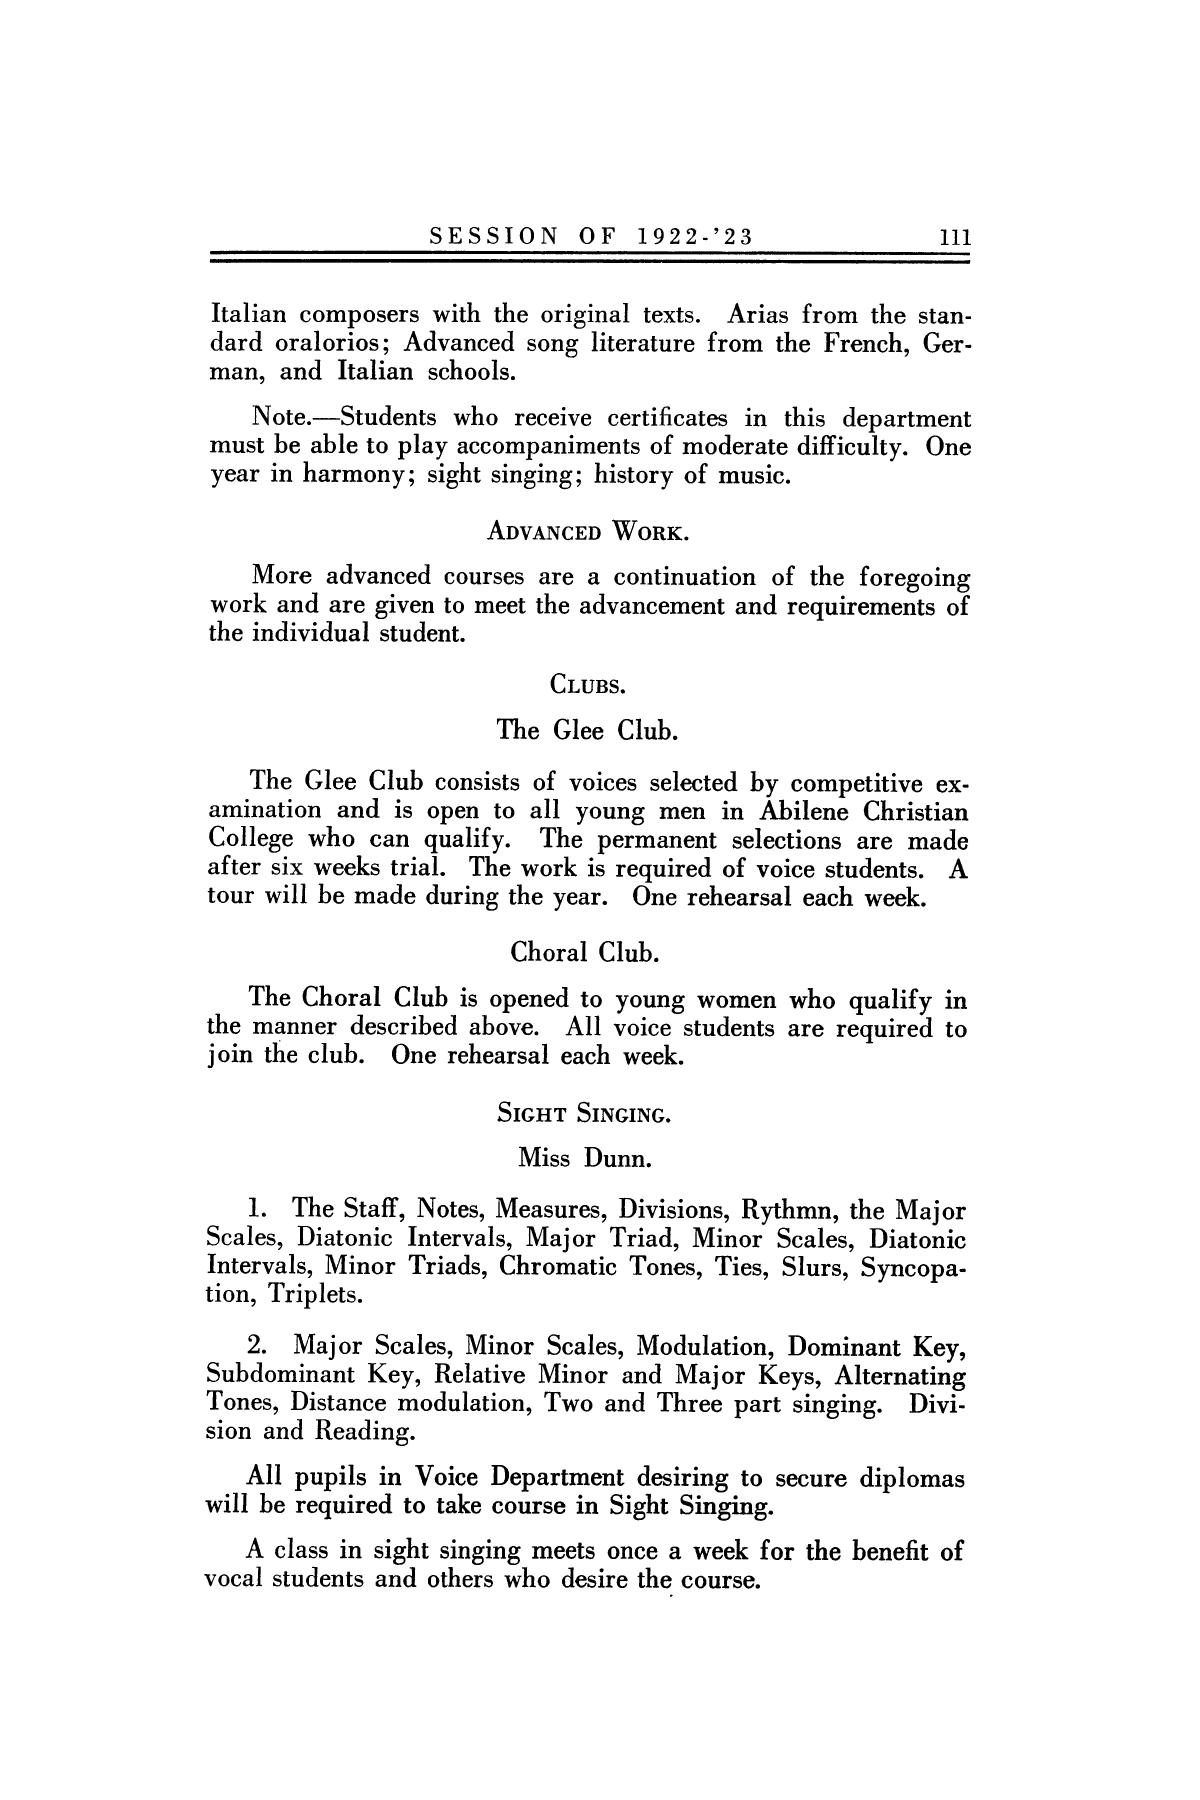 Catalog of Abilene Christian College, 1922-1923
                                                
                                                    111
                                                